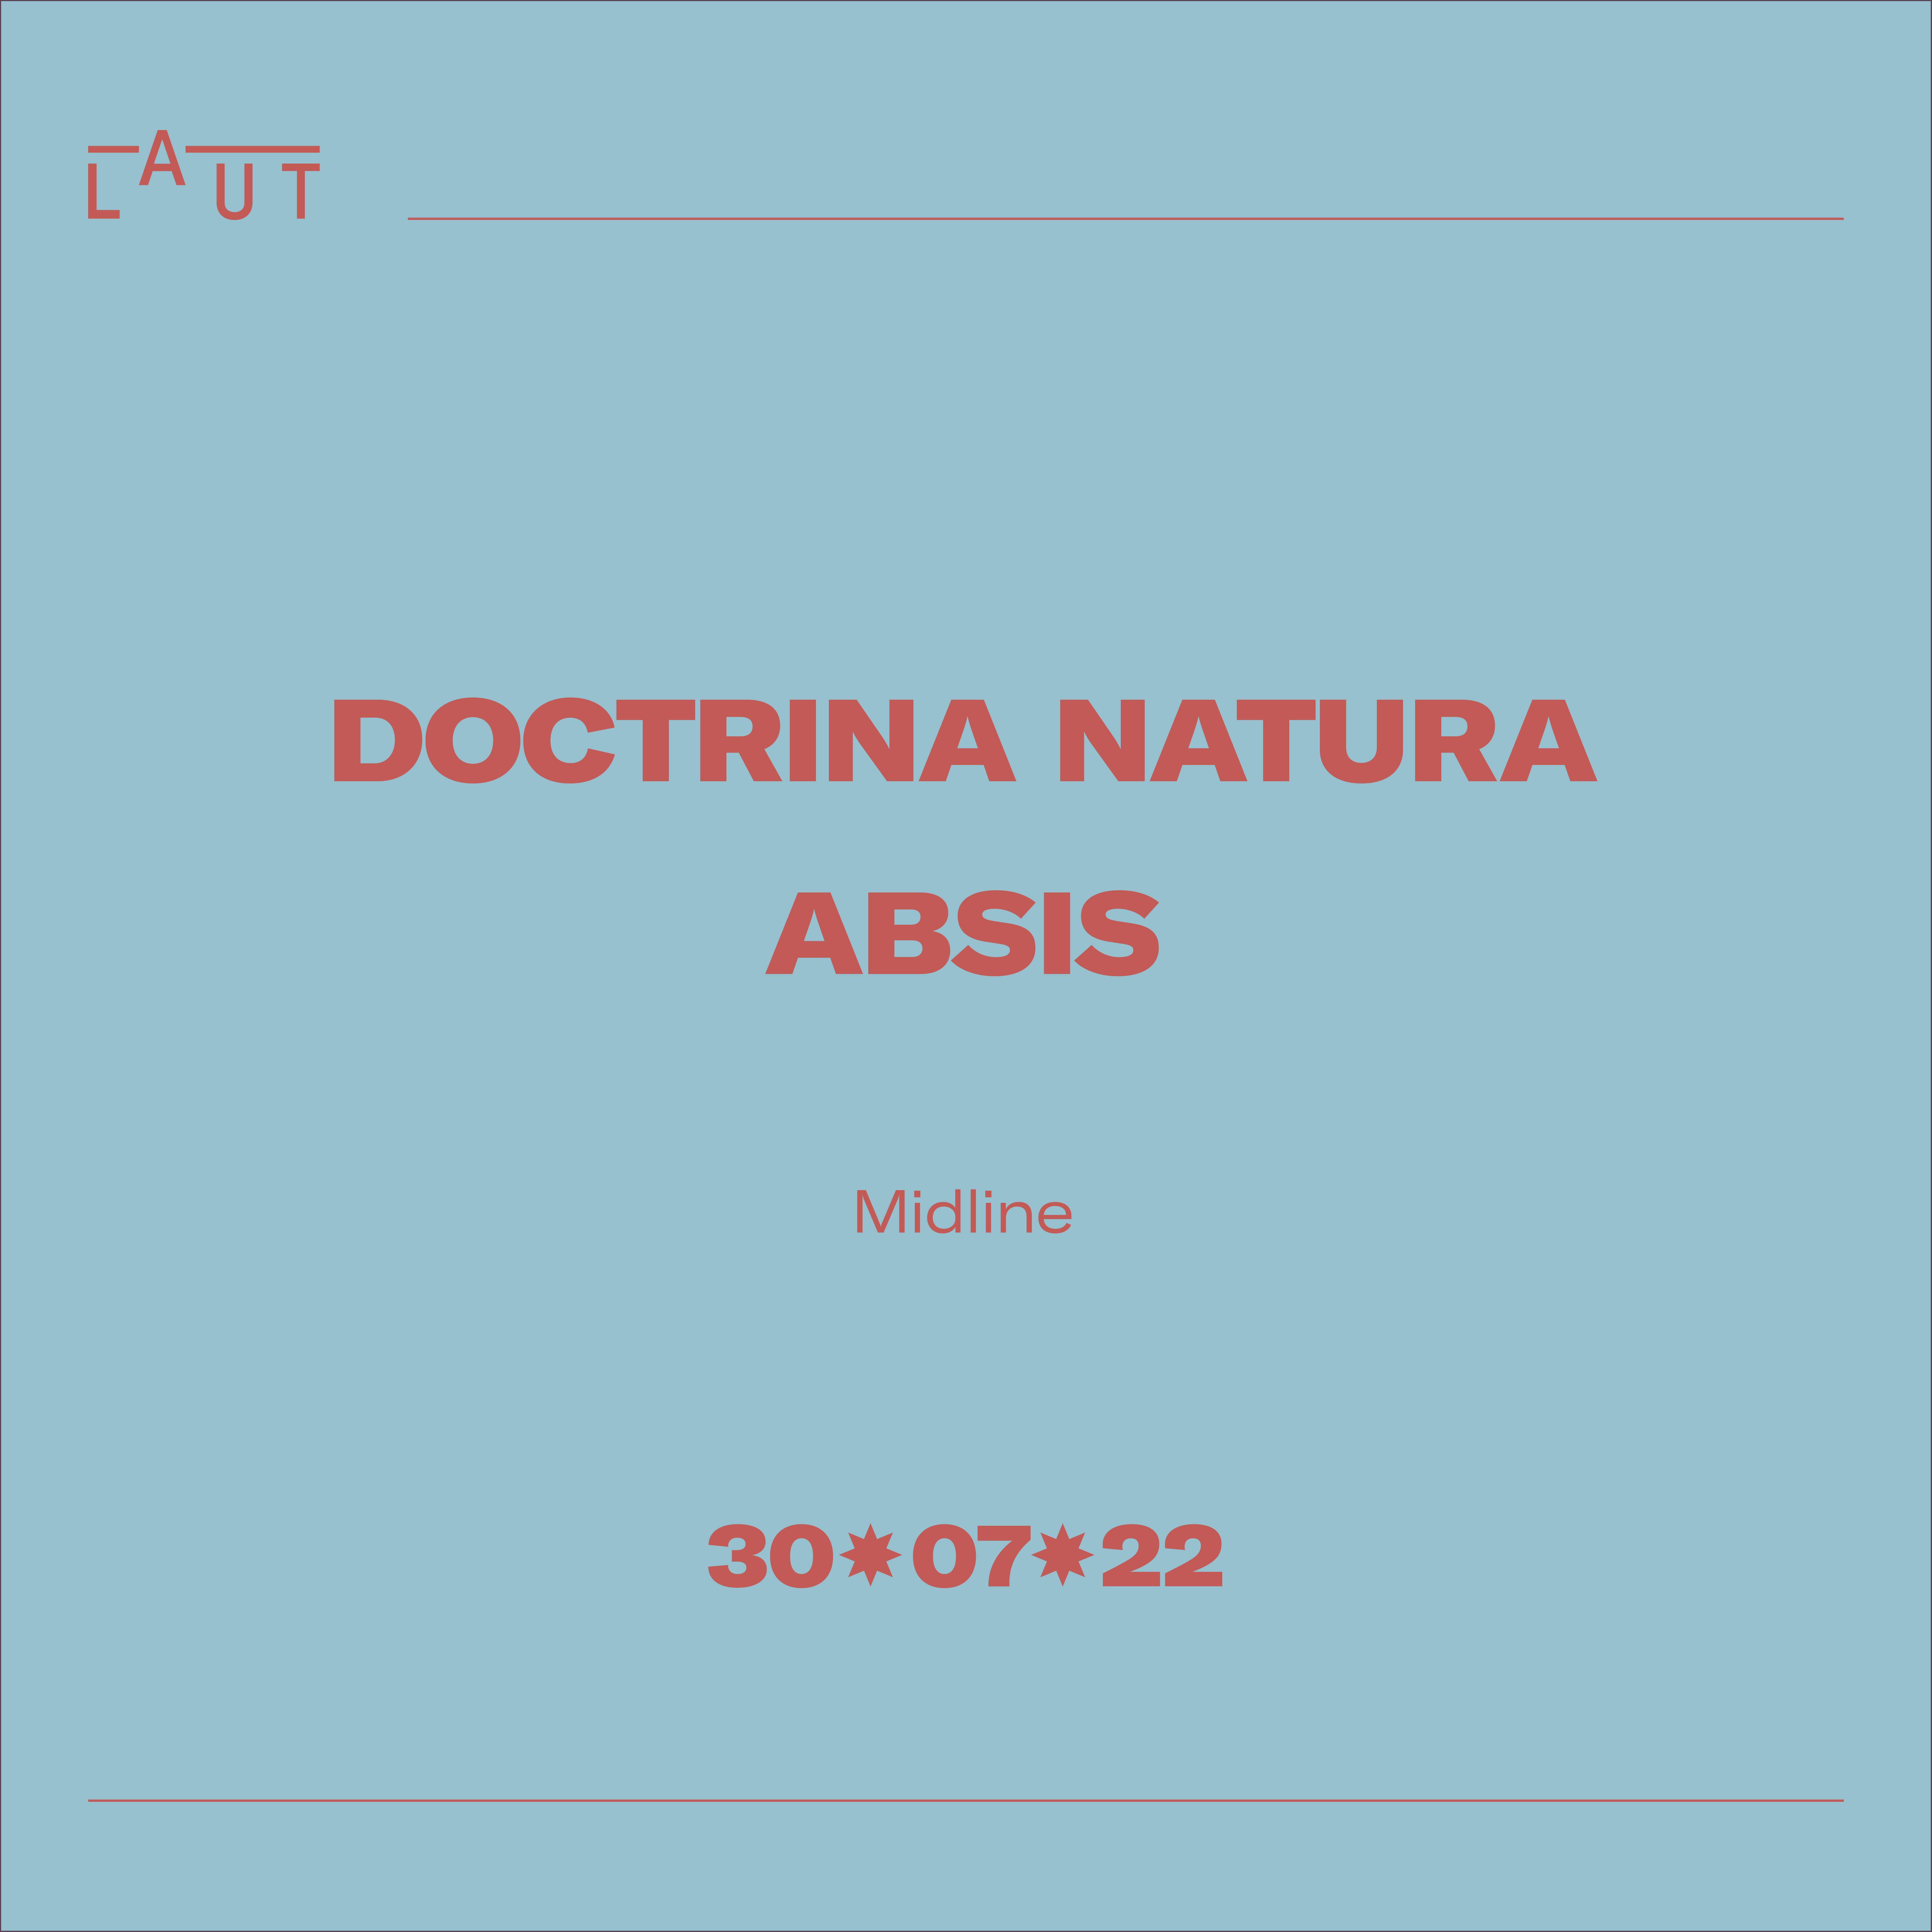 Doctrina Natura + ABSIS - フライヤー表